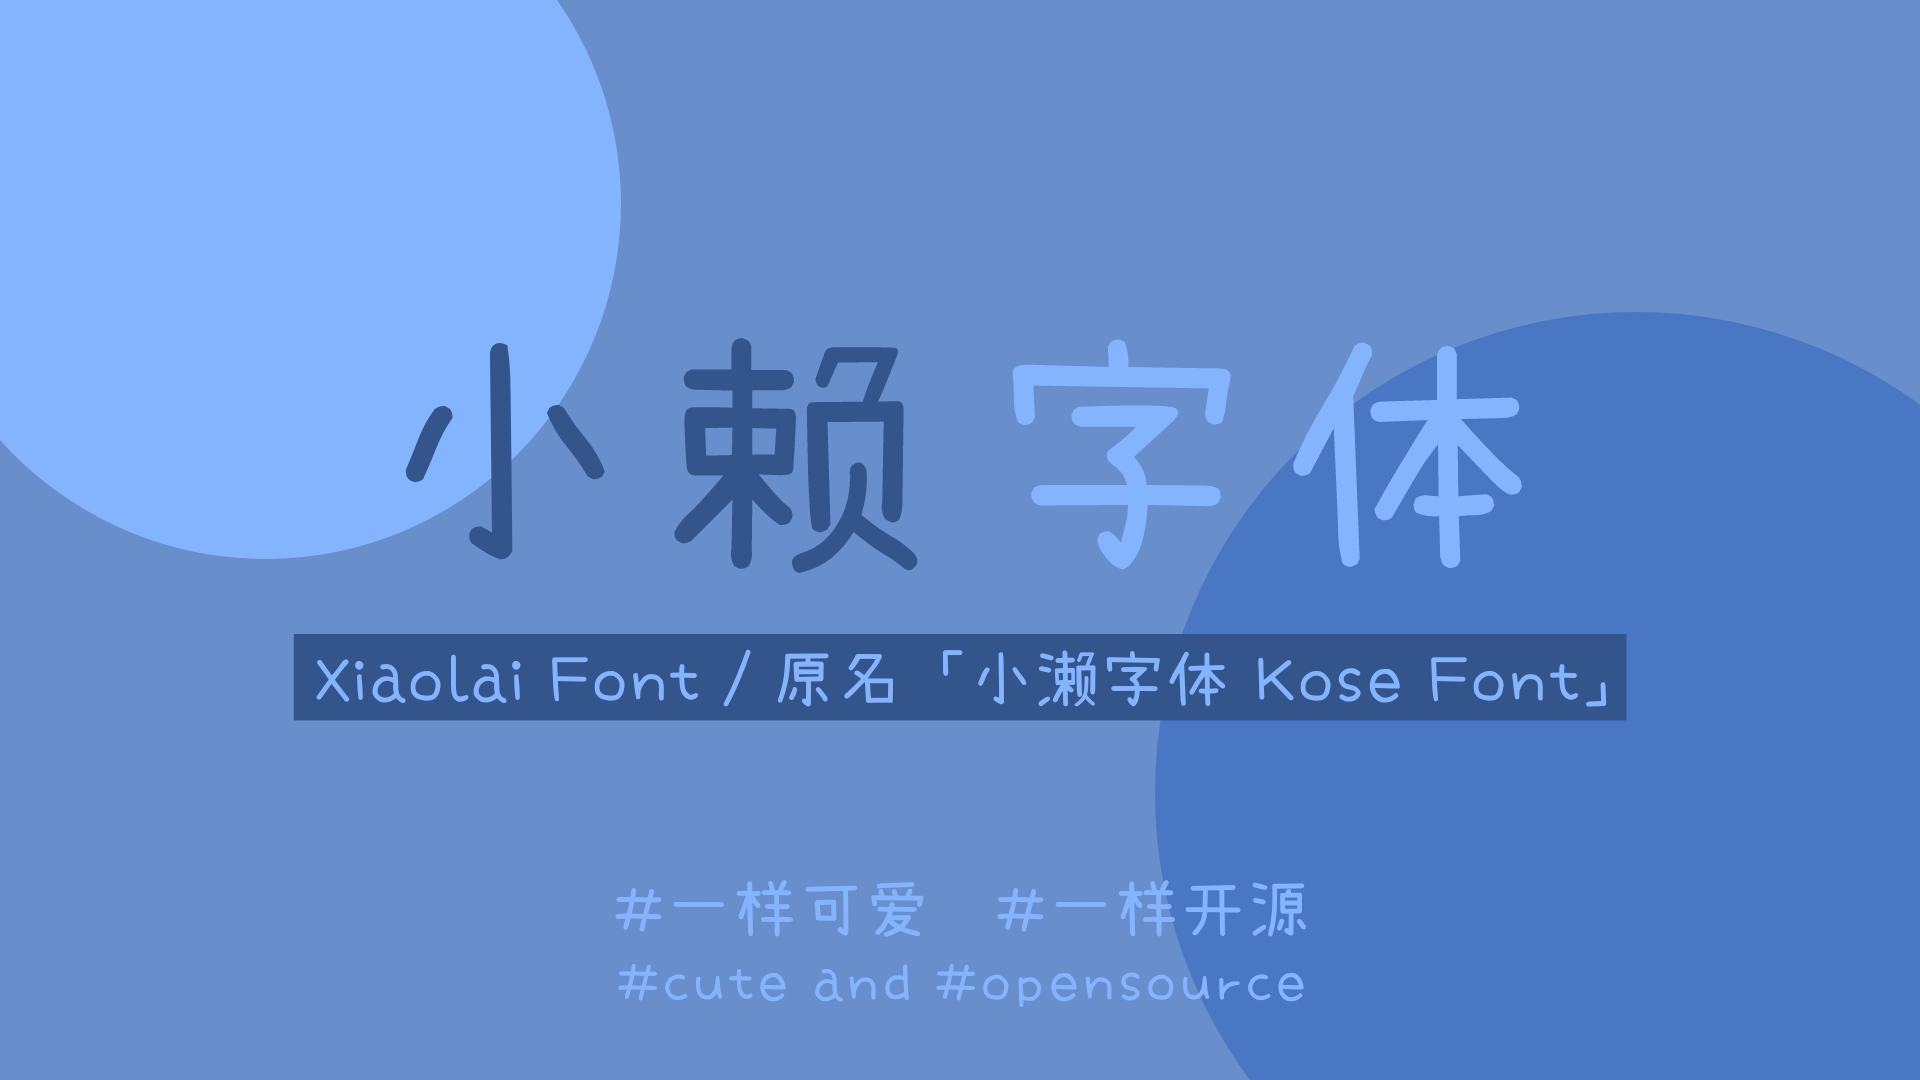 推荐一款日本的免费商用字体——濑户字体